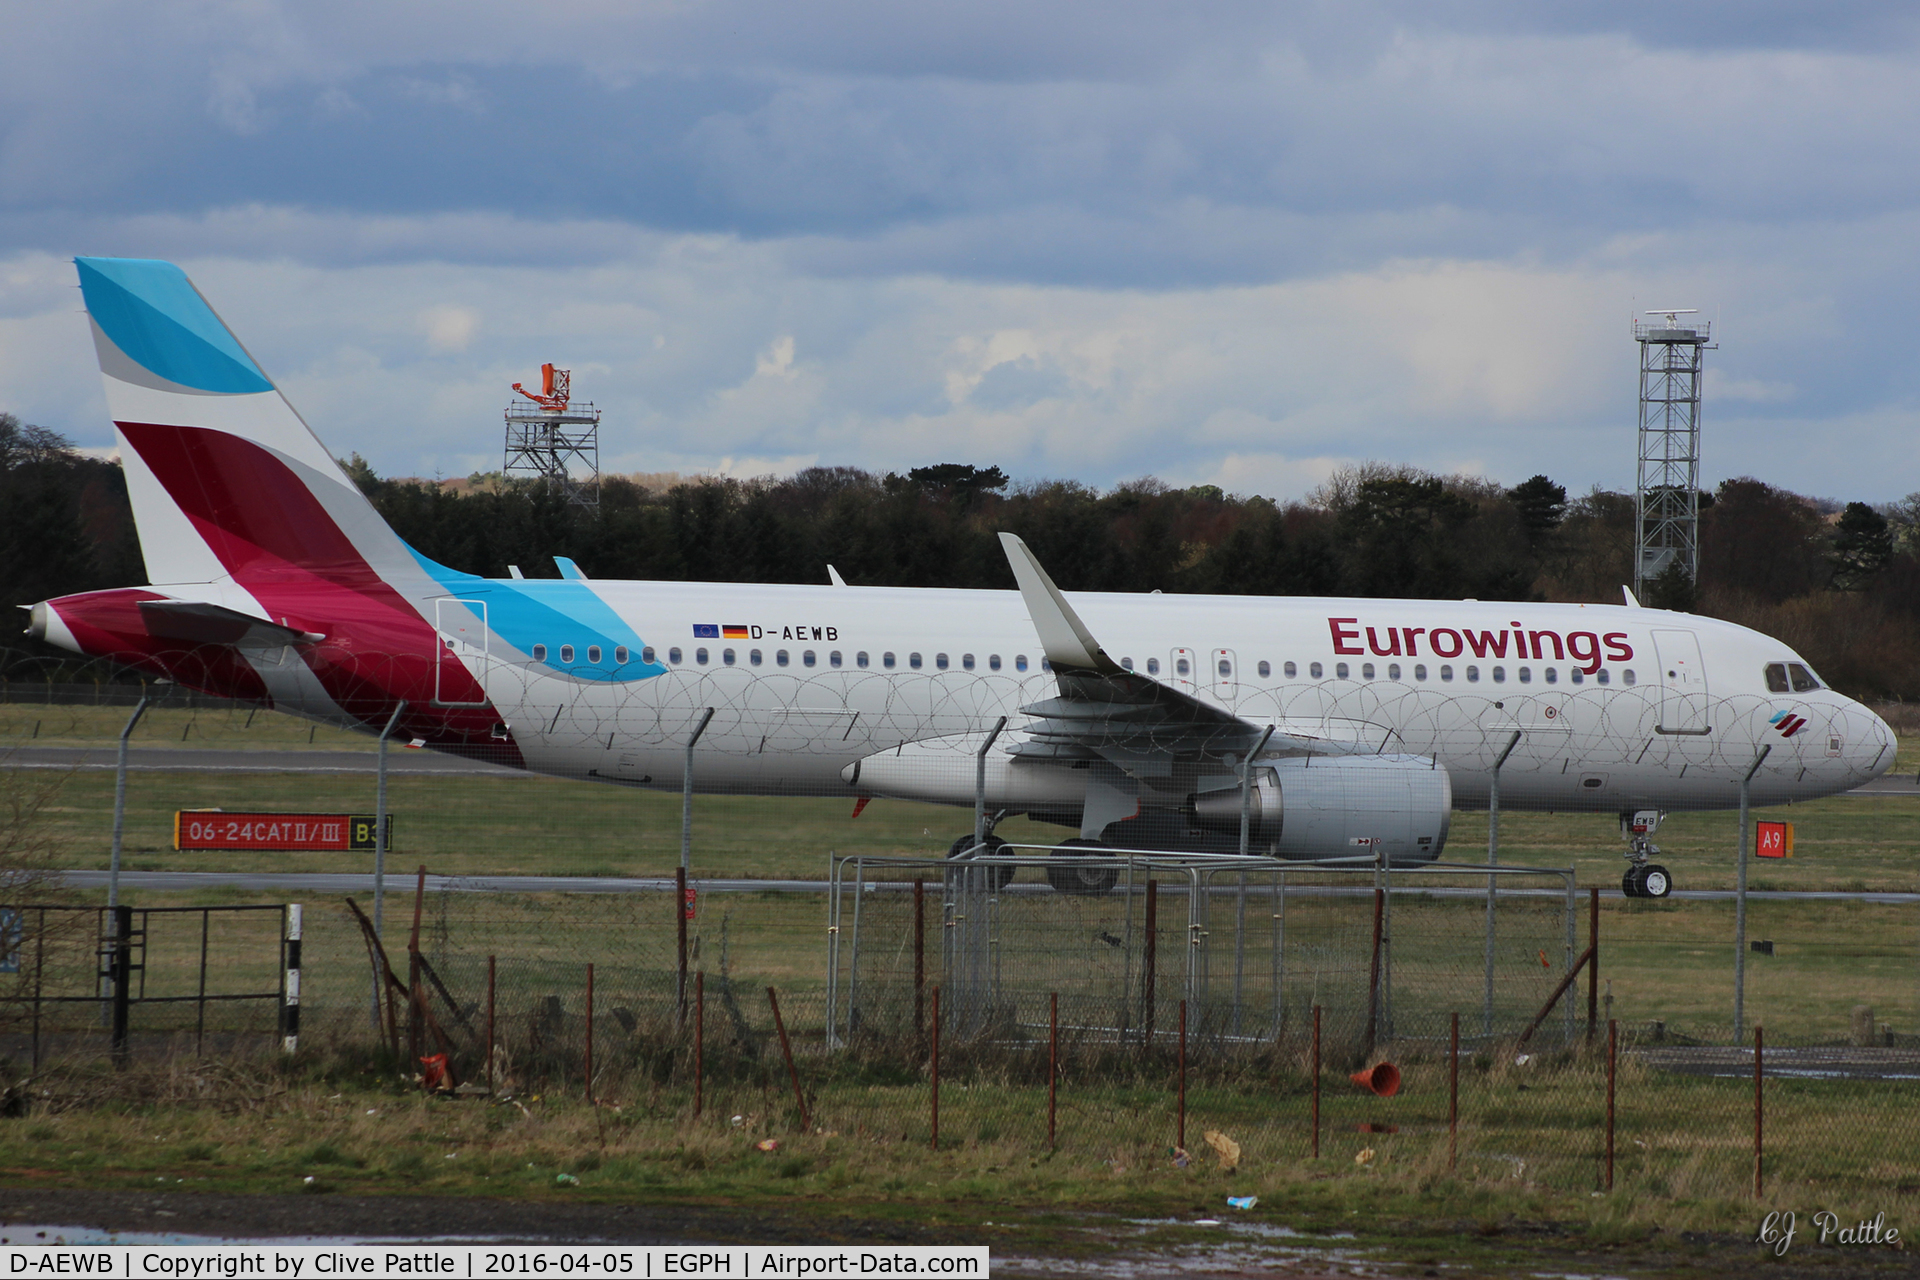 D-AEWB, 2016 Airbus A320-214 C/N 6992, Taxy to gate at Edinburgh EGPH - a new aircraft for airport-data